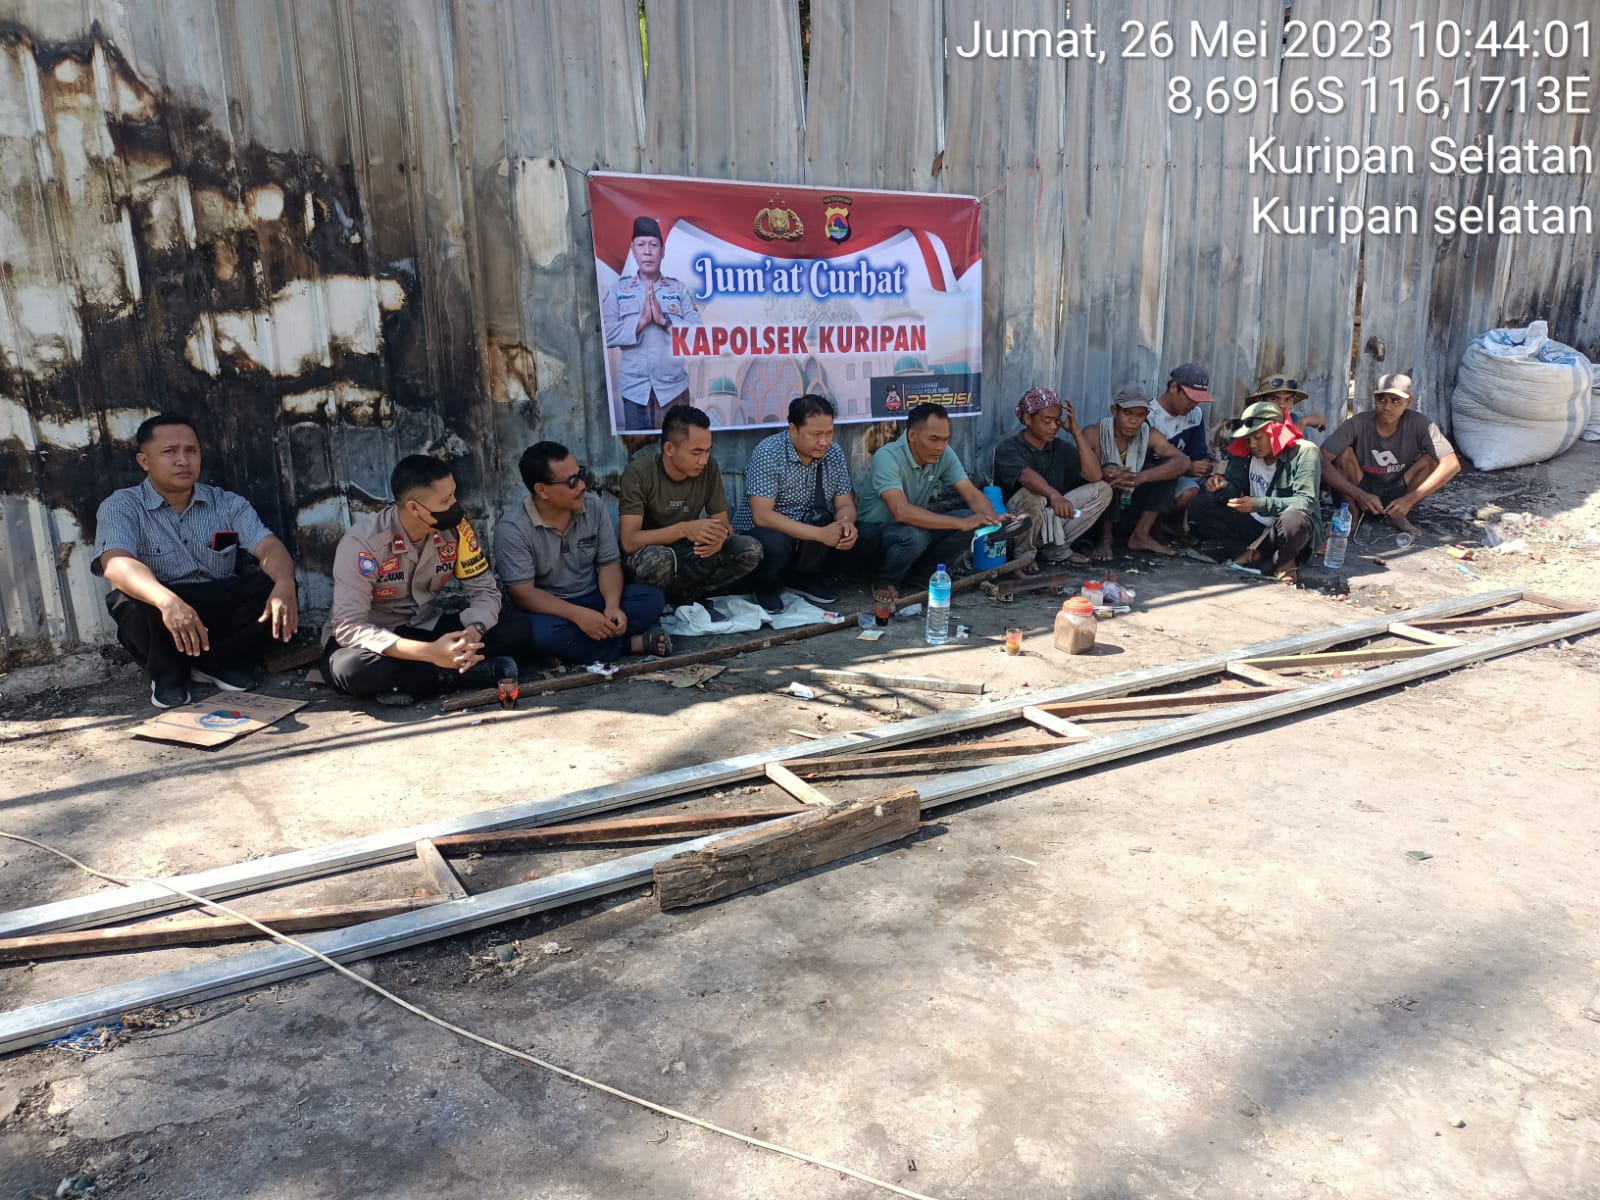 Kapolsek Kuripan Melakukan Jumat Curhat di Dusun Pelabu Barat, Desa Kuripan Selatan